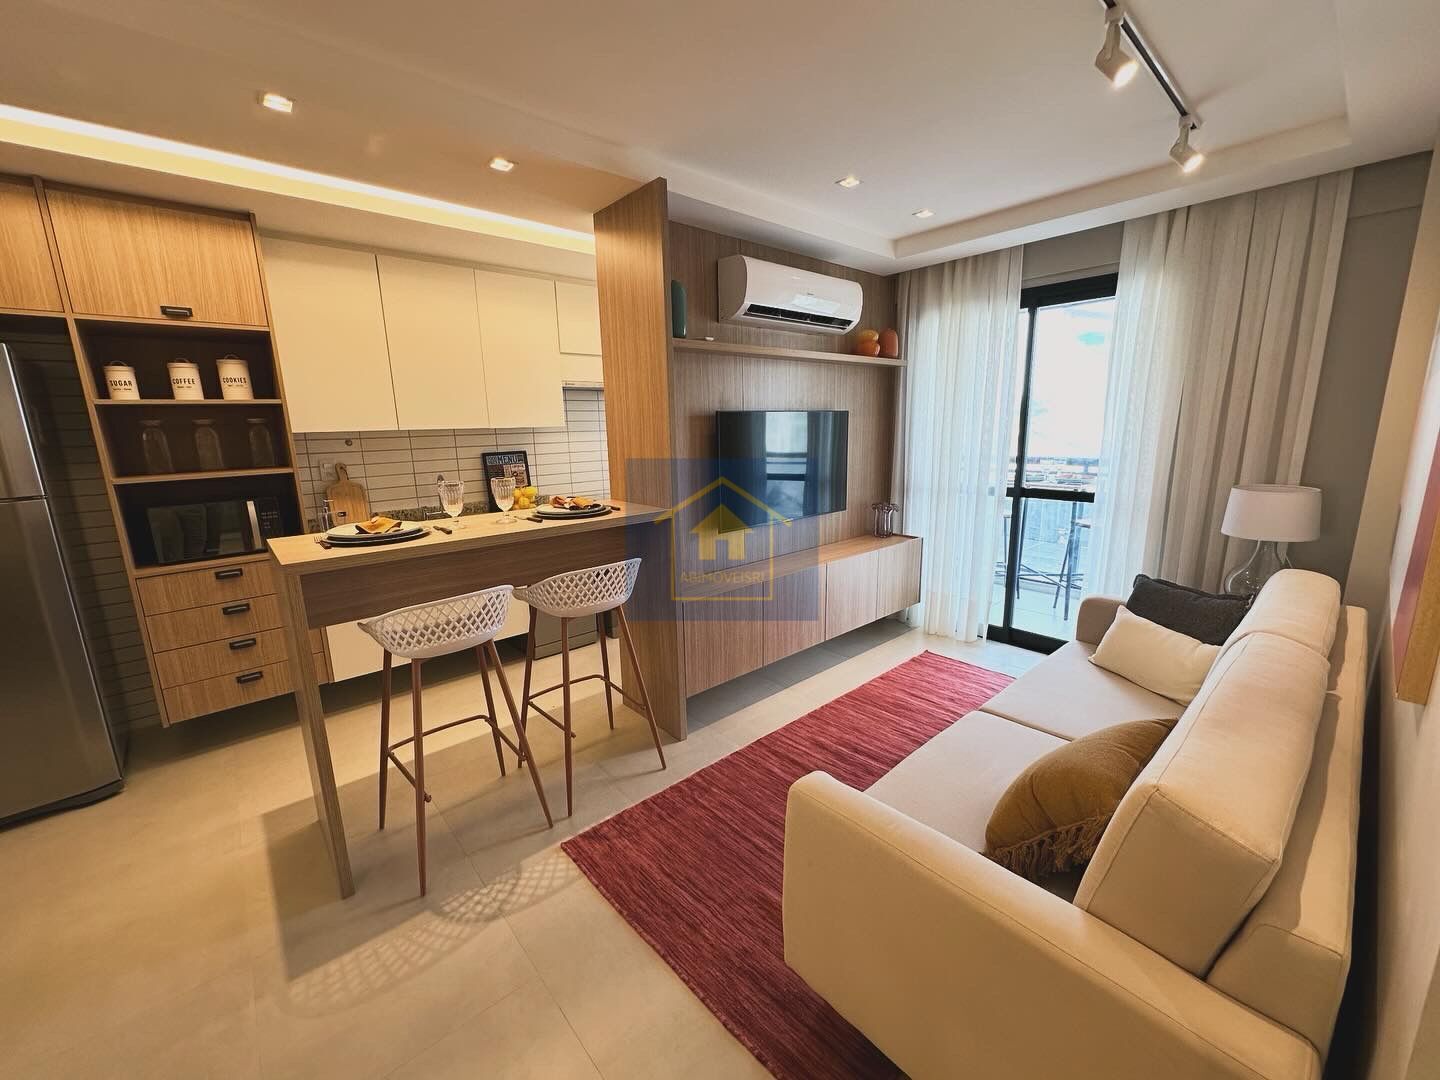 Apartamento, 3 quartos, 81 m² - Foto 2